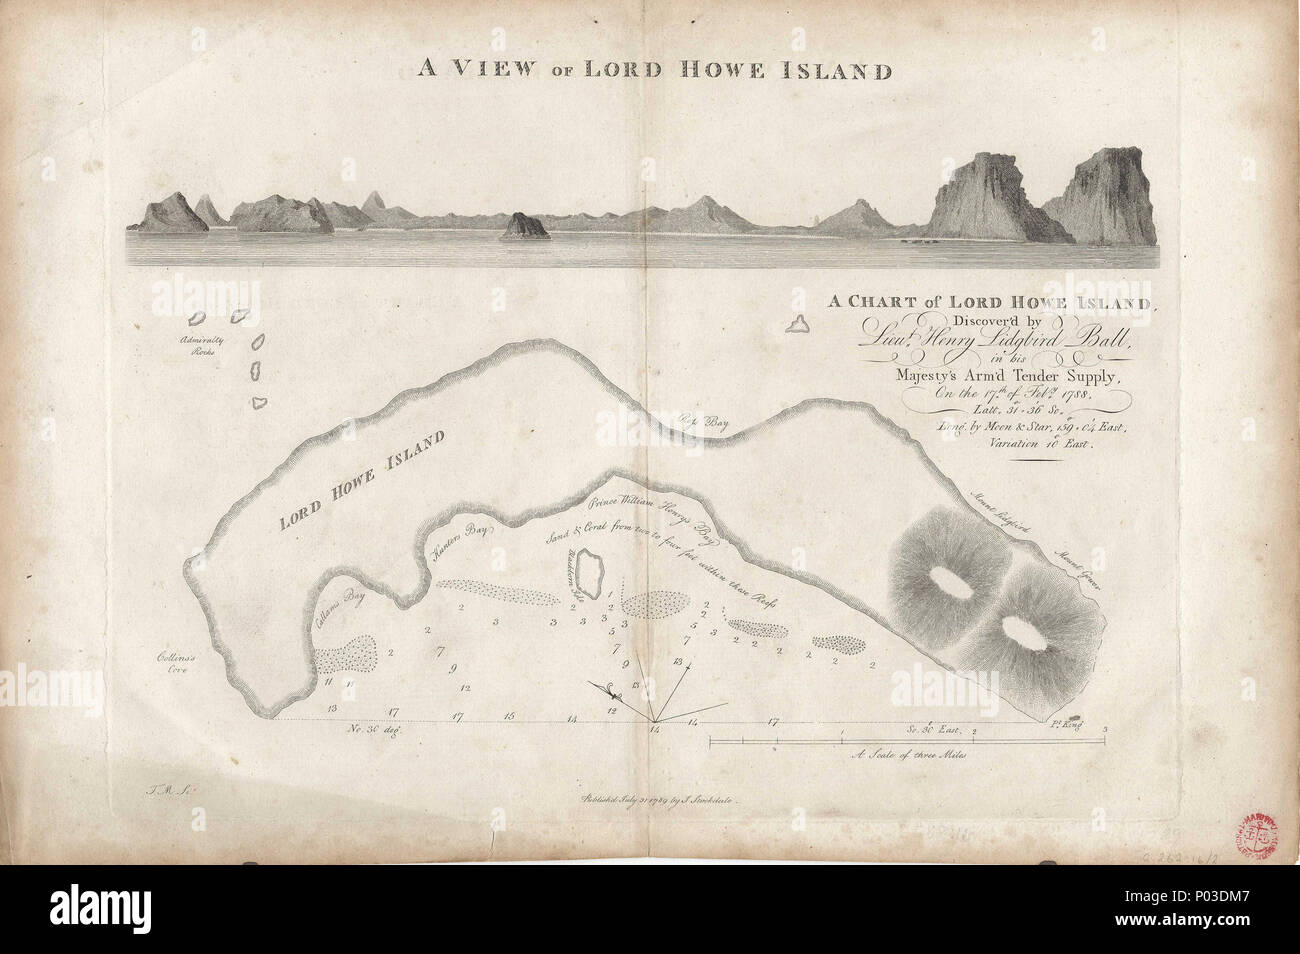 . Inglese: un grafico di Isola di Lord Howe,scoprire'd da Lieut. Henry Lidgbird Ball, nella sua maestà del braccio'd gara alimentazione sulla xvii Feby. 1788.foglio singolo. Incisione. Scala circa 1:45.000 (bar). La barra graduata in miglia. Ungraduated grafico. A nord, a 302 gradi. La latitudine e la longitudine ("da moon & star") ha dichiarato e di variazione di data. [Errore di Latitude è di 4 minuti, errore di longitudine a solo 1 minuto.] Scandagli mostrati. Il grafico contiene un riquadro vista: vista dell Isola di Lord Howe. G262:16/2 Lord Howe è da Stockdale . 1789. John Stockdale 35 un grafico di Isola di Lord Howe,scoprire'd da Lieut. Henry Lidgbird Ball, Foto Stock